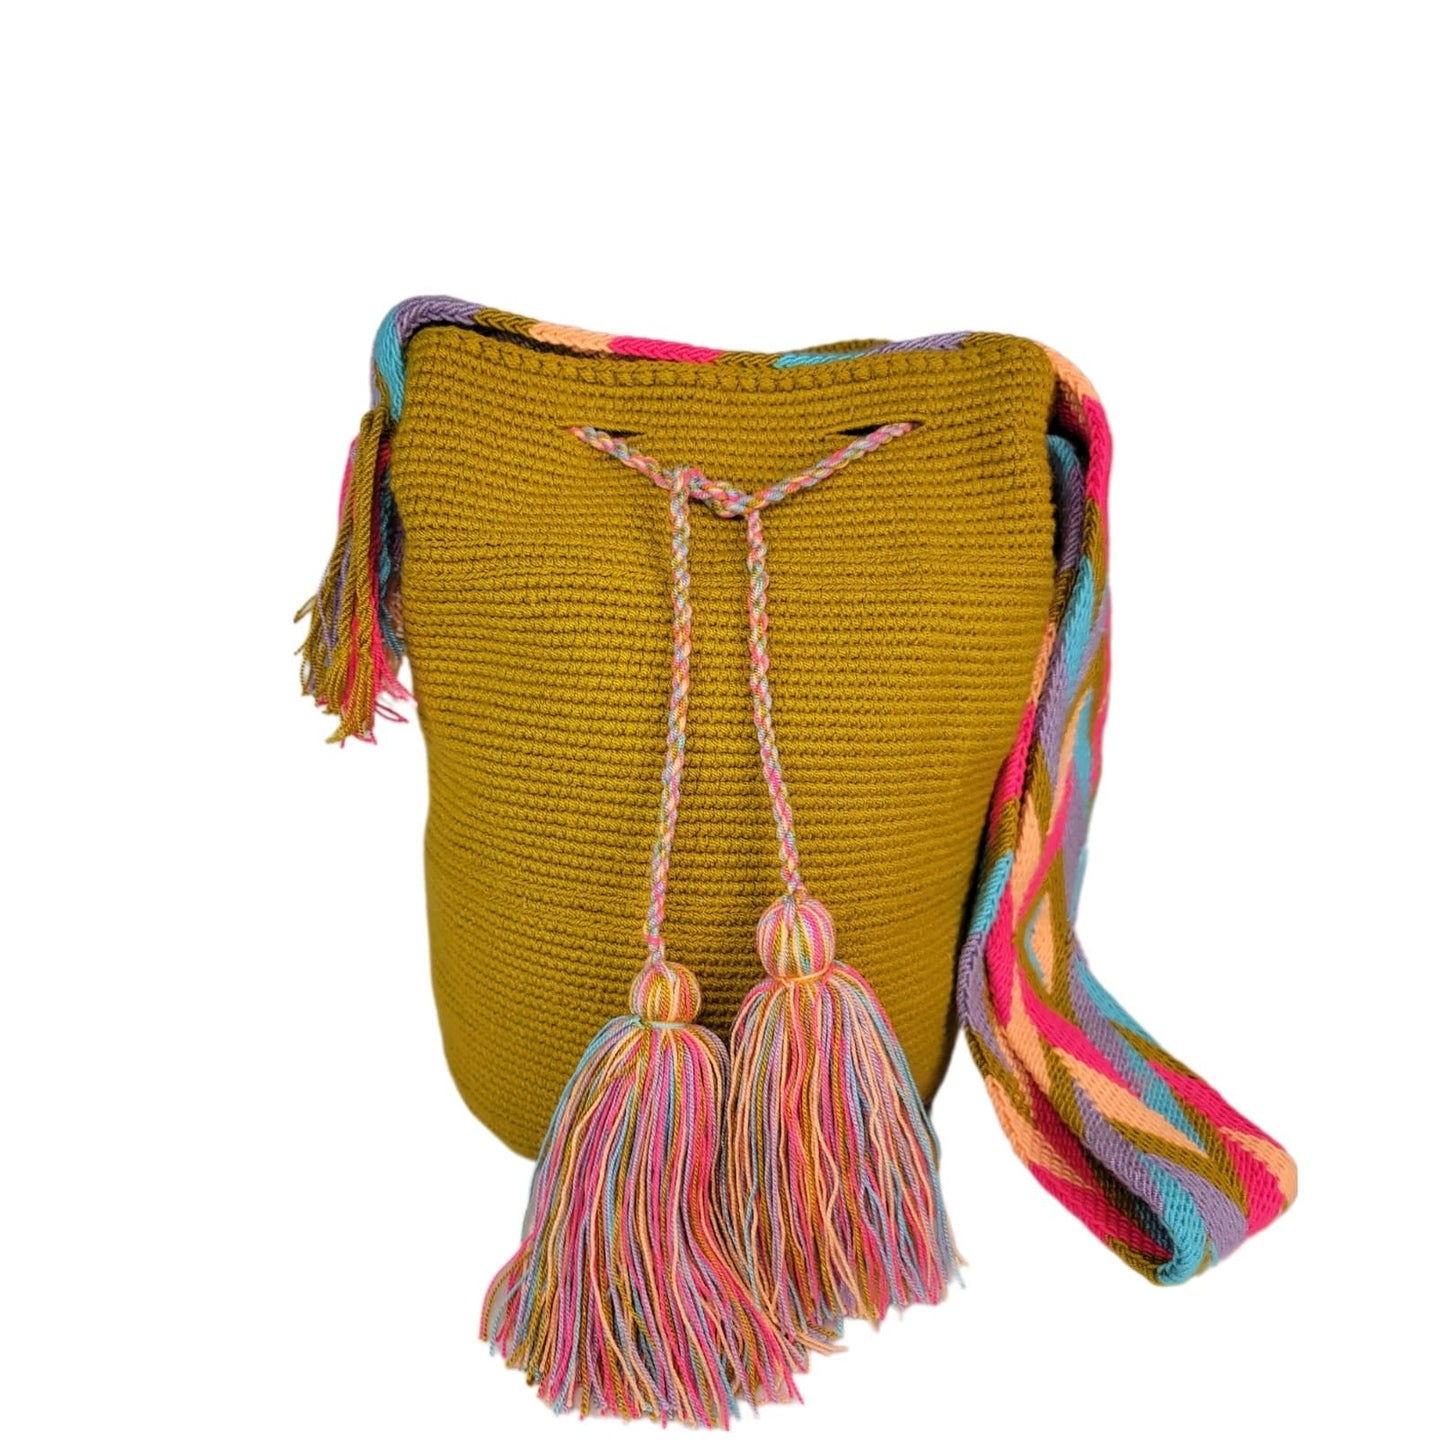 Traditional Wayuu bag with tassels